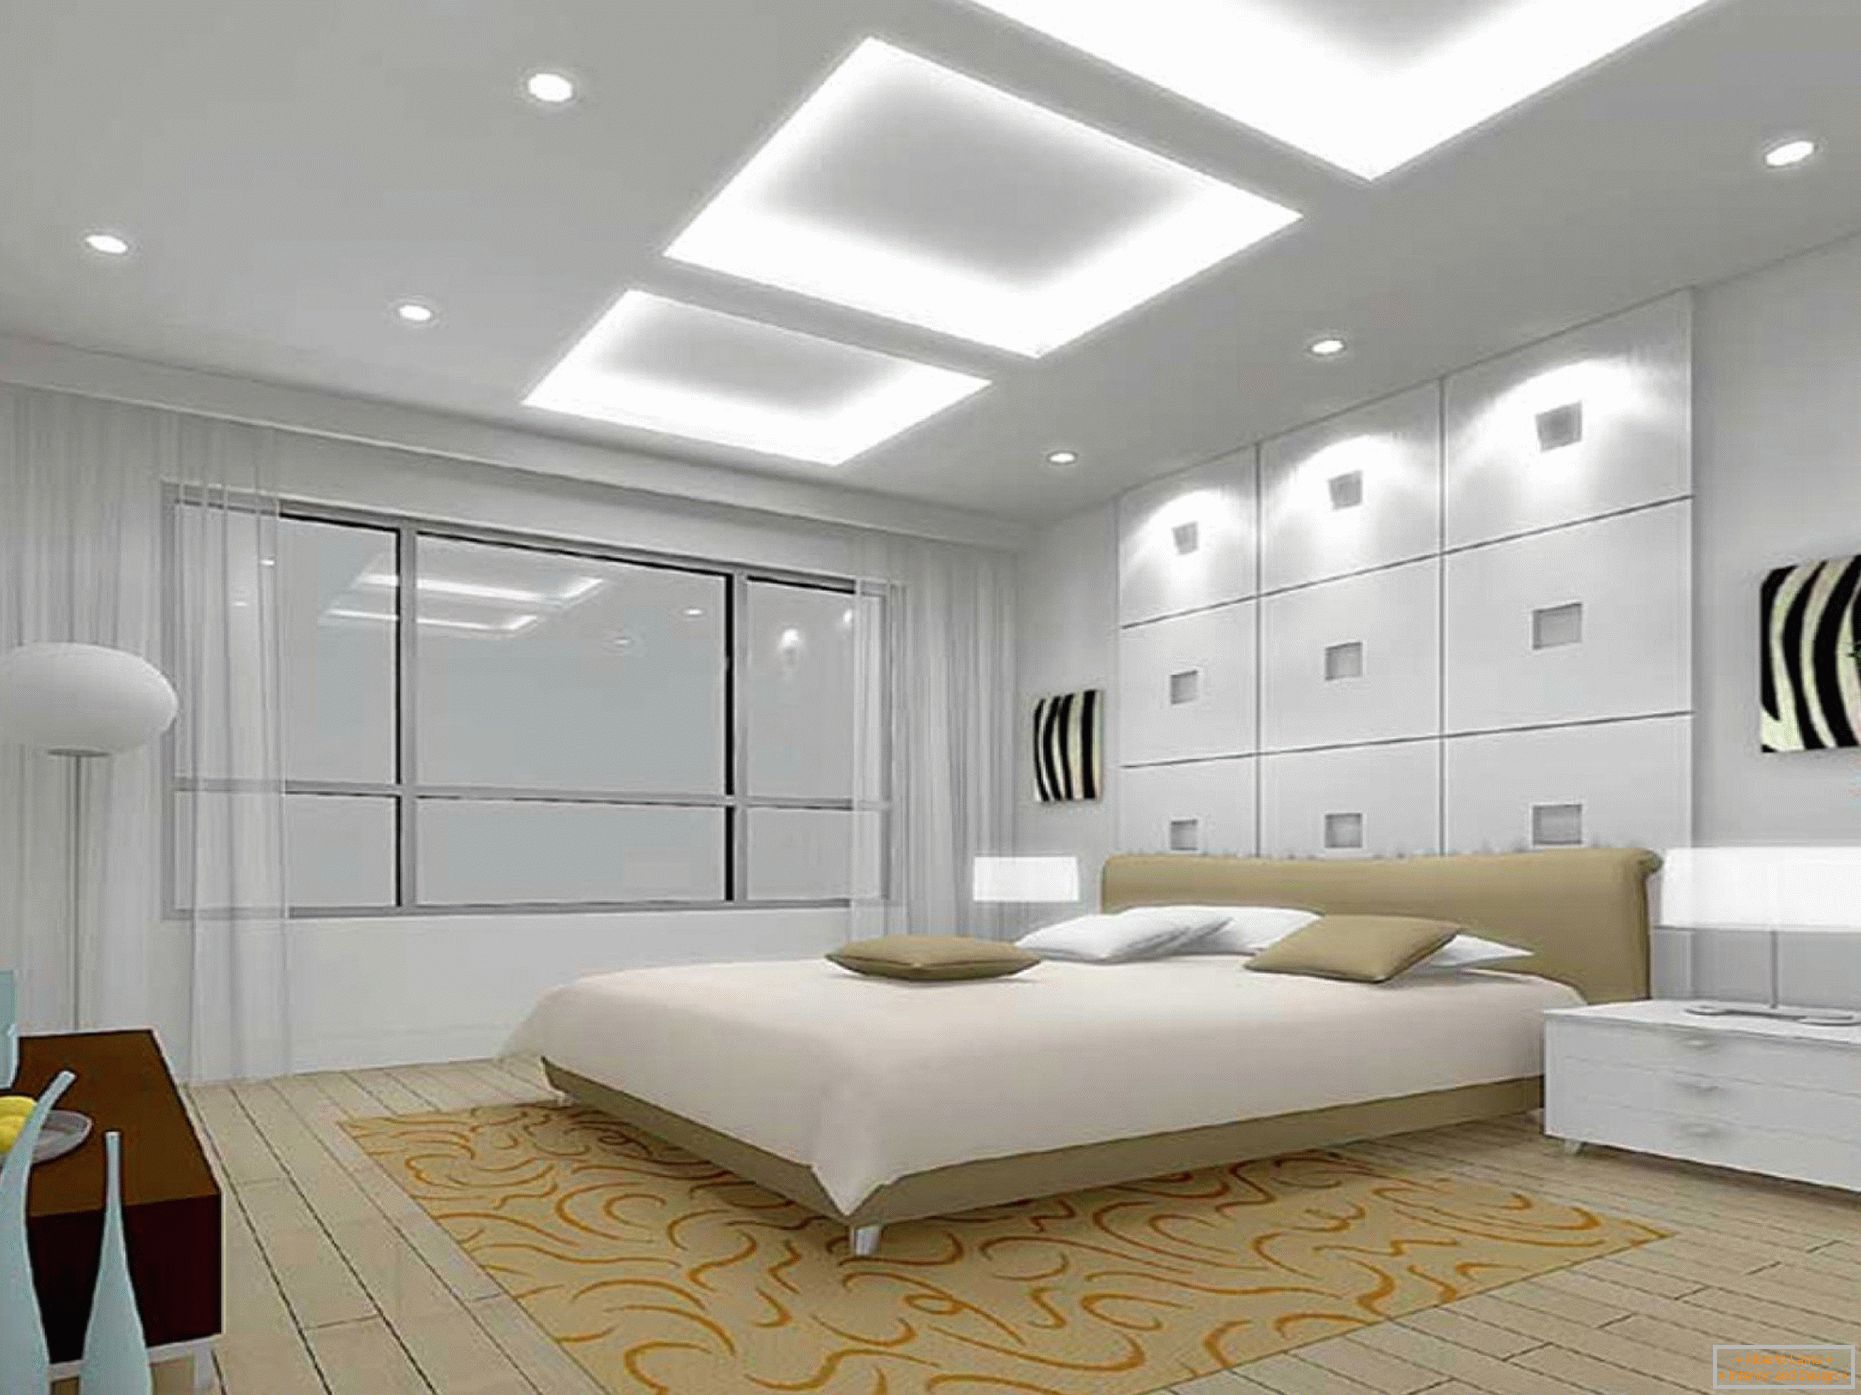 Opzione di illuminazione della camera da letto nei toni del bianco